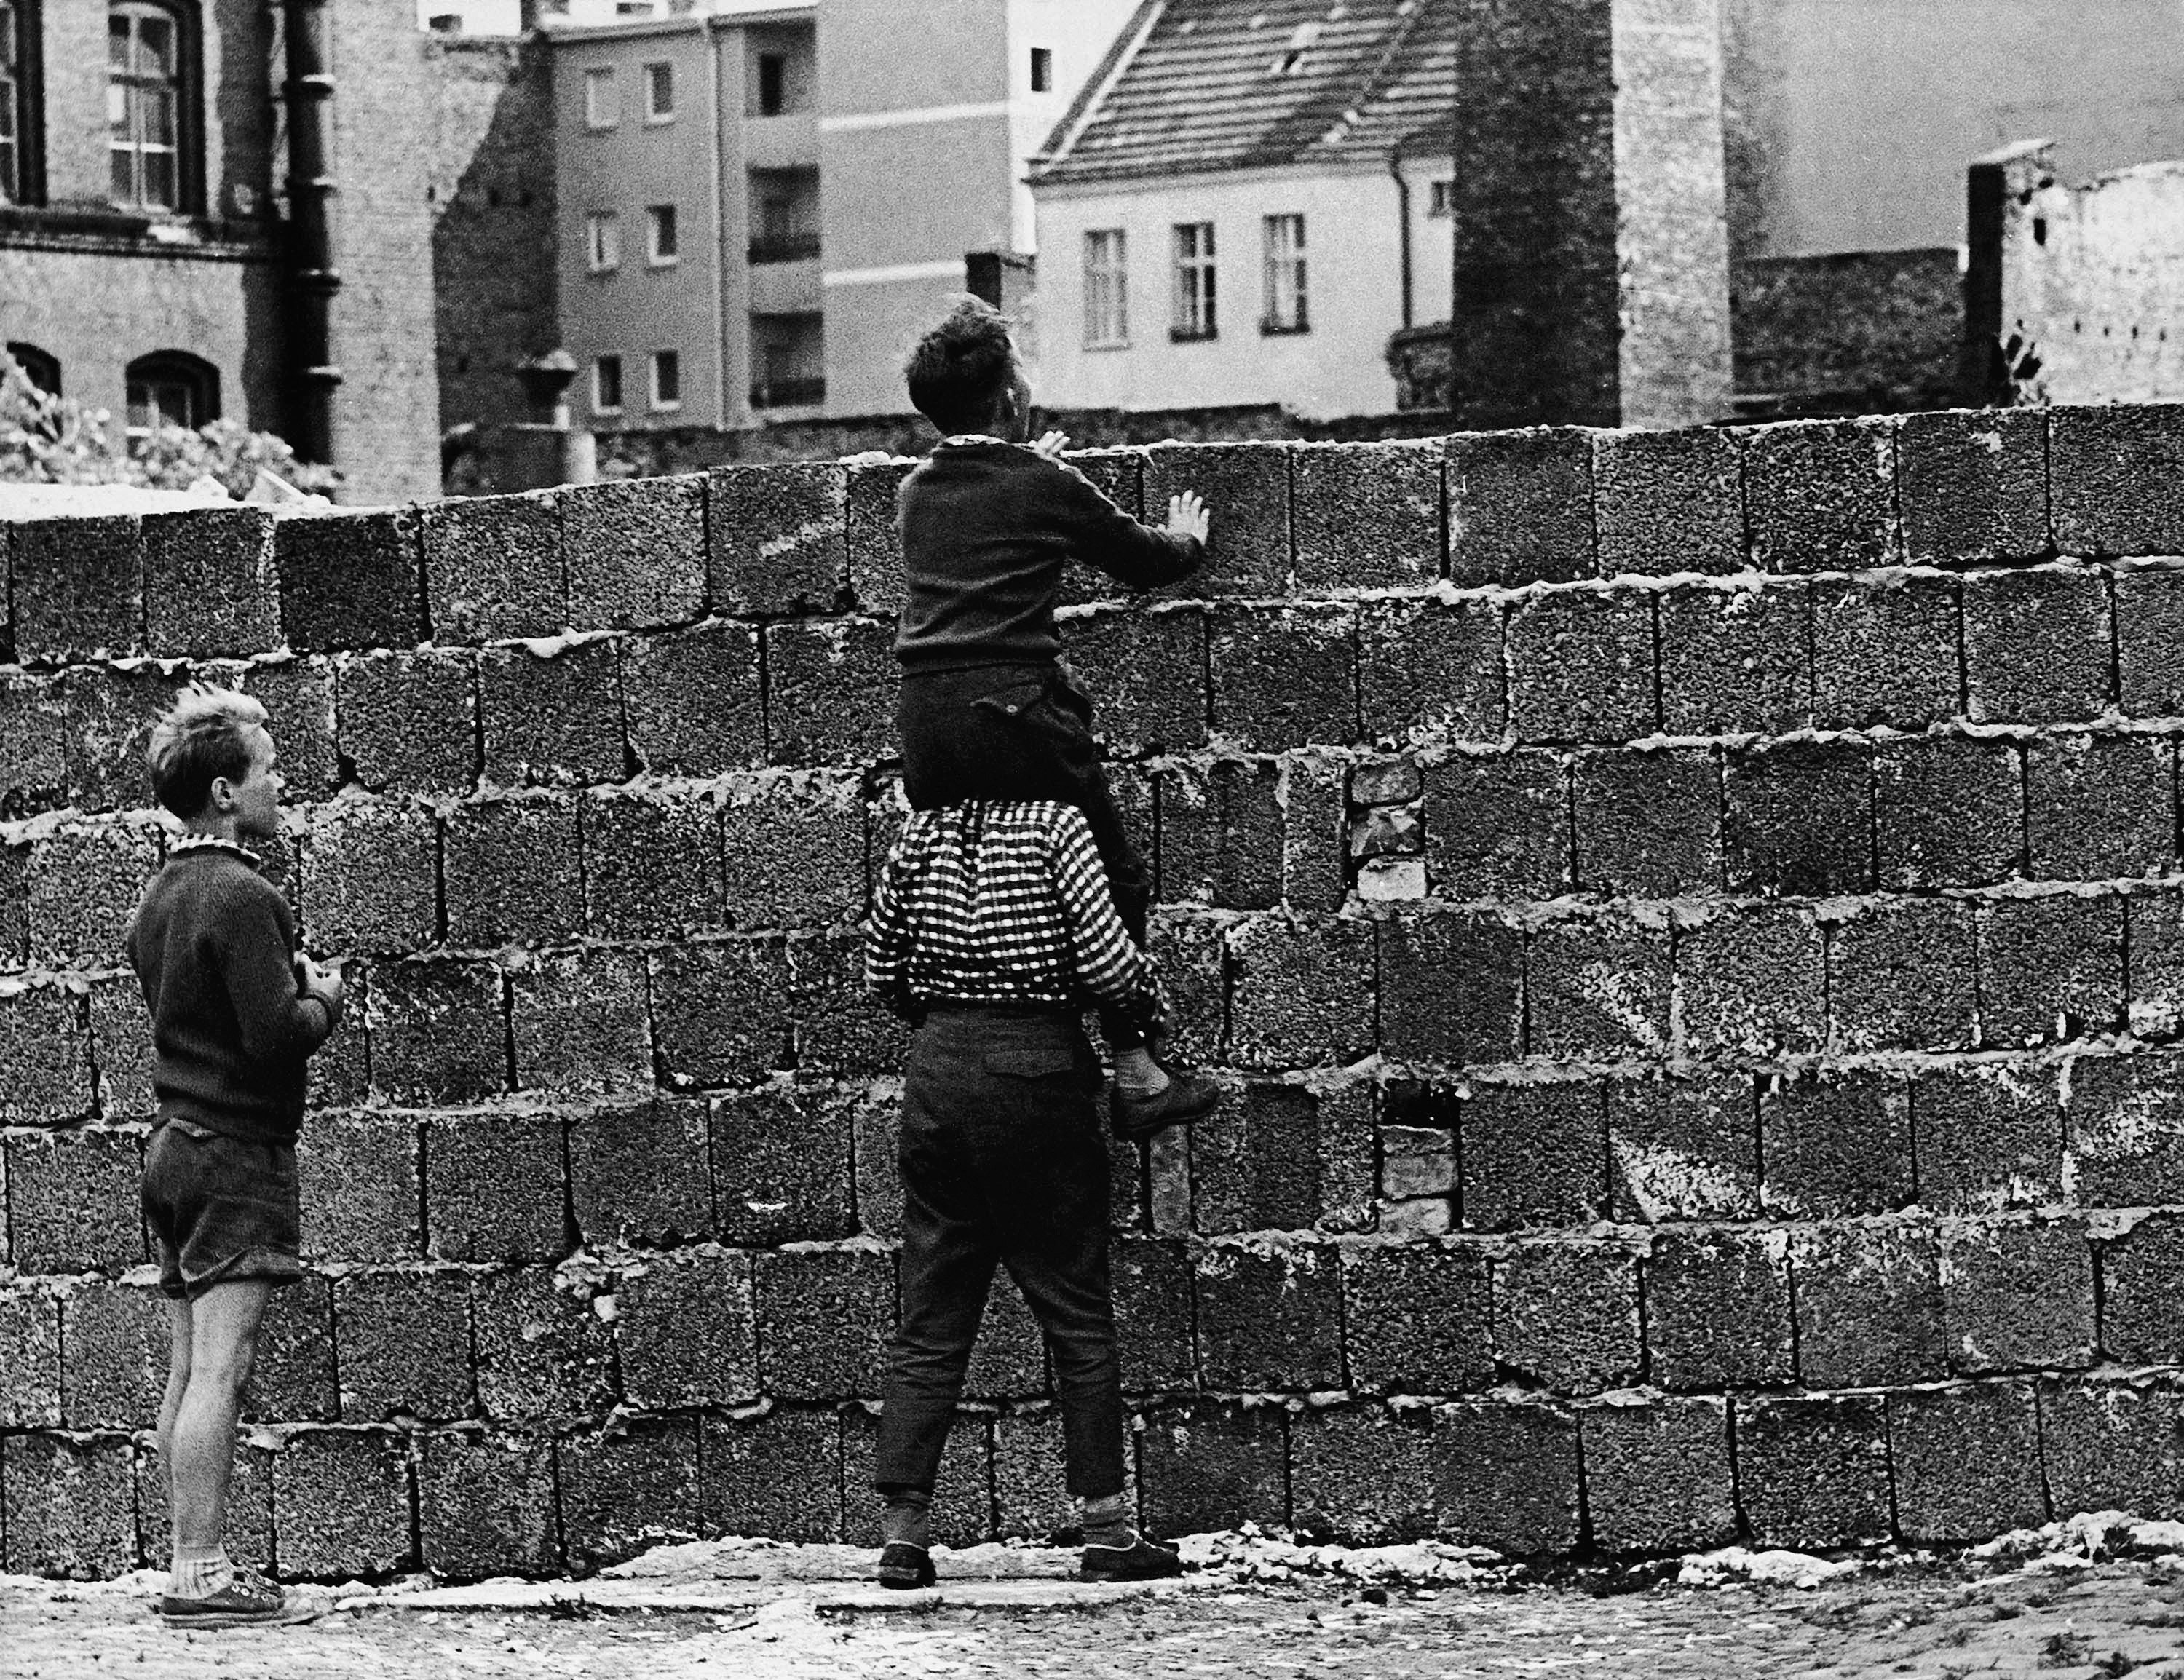 Mängder av människor försökte fly över muren, majoriteten från kommunistiska öst till kapitalistiska väst. Vissa lyckades, de flesta misslyckades och många blev ihjälskjutna. Den officiella dödssiffran är 136, men det lär ha varit 600-700 som dog.